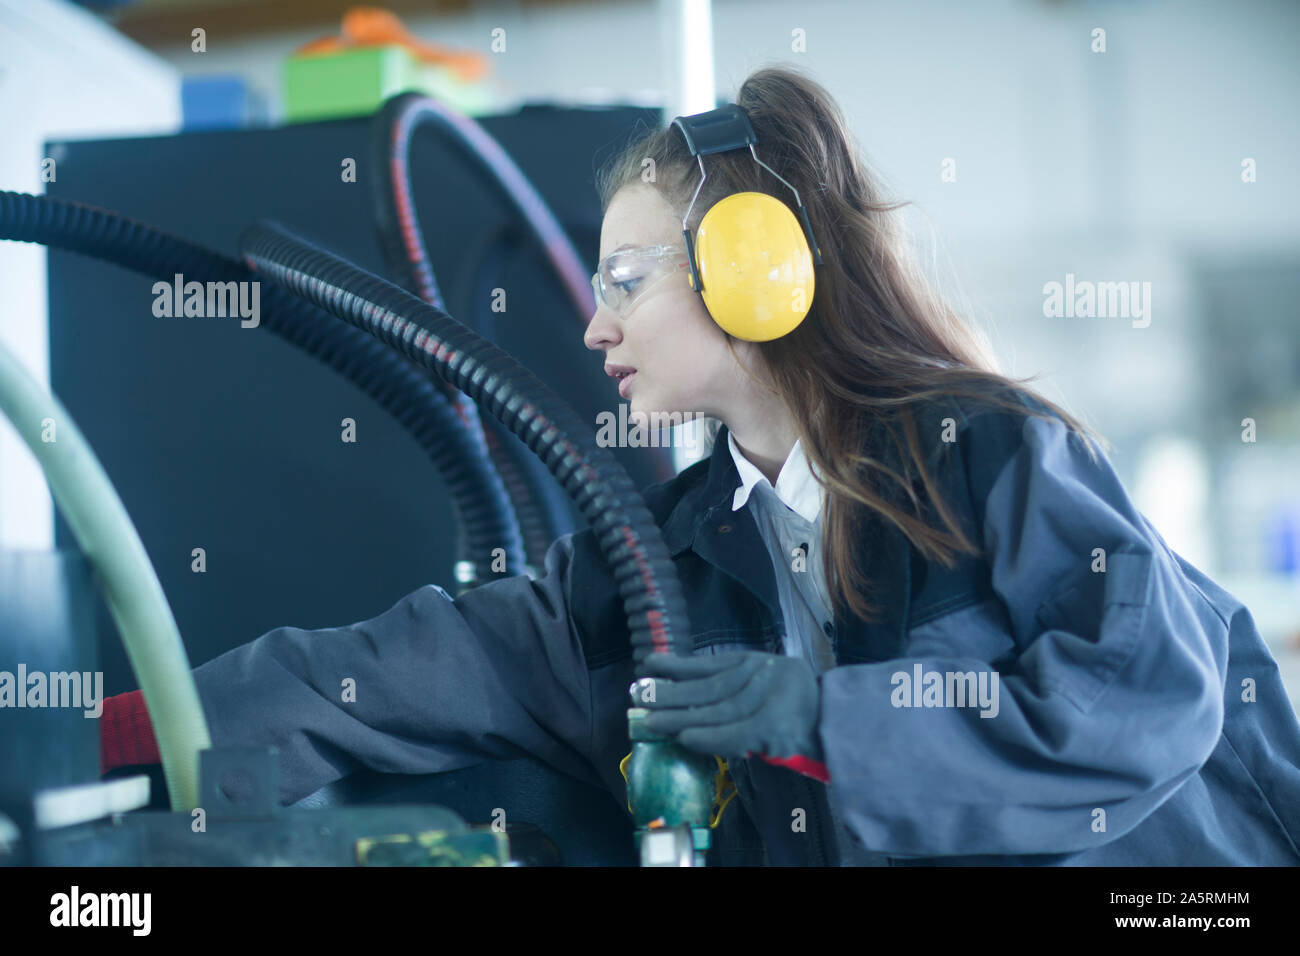 Industrielle Anlage mit einem Ingenieur Weiblich Stockfoto